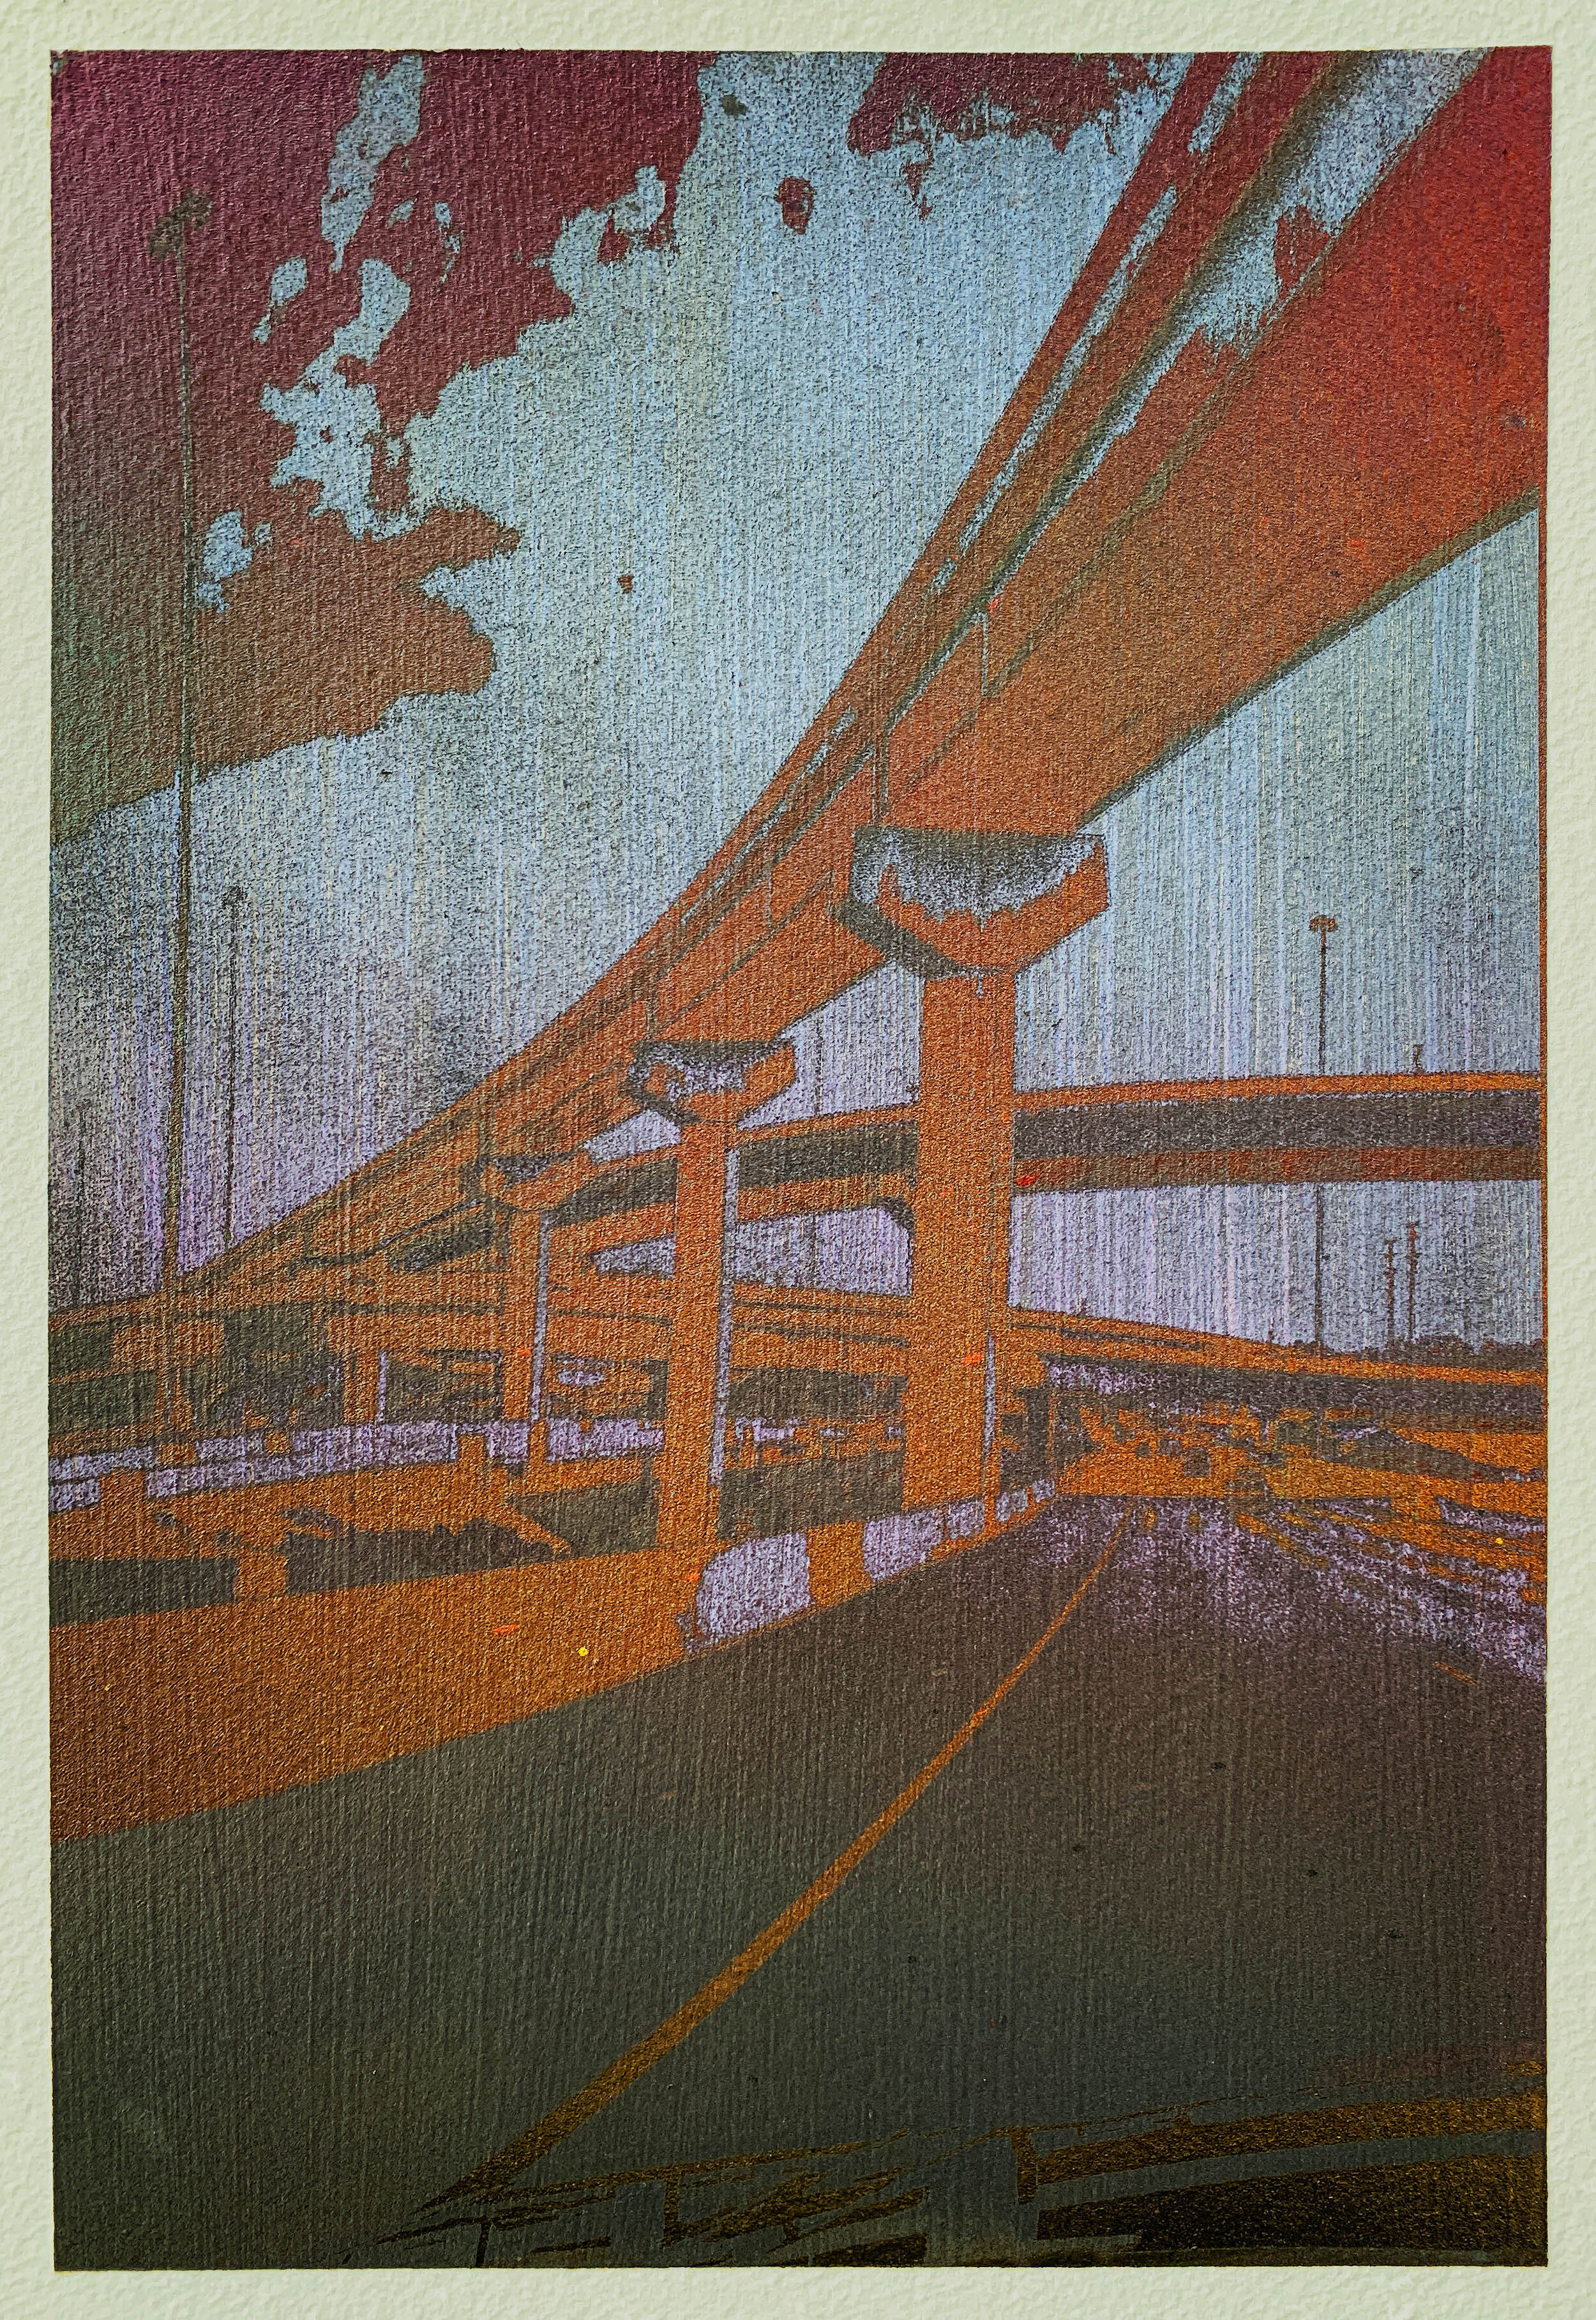 interchange overpass